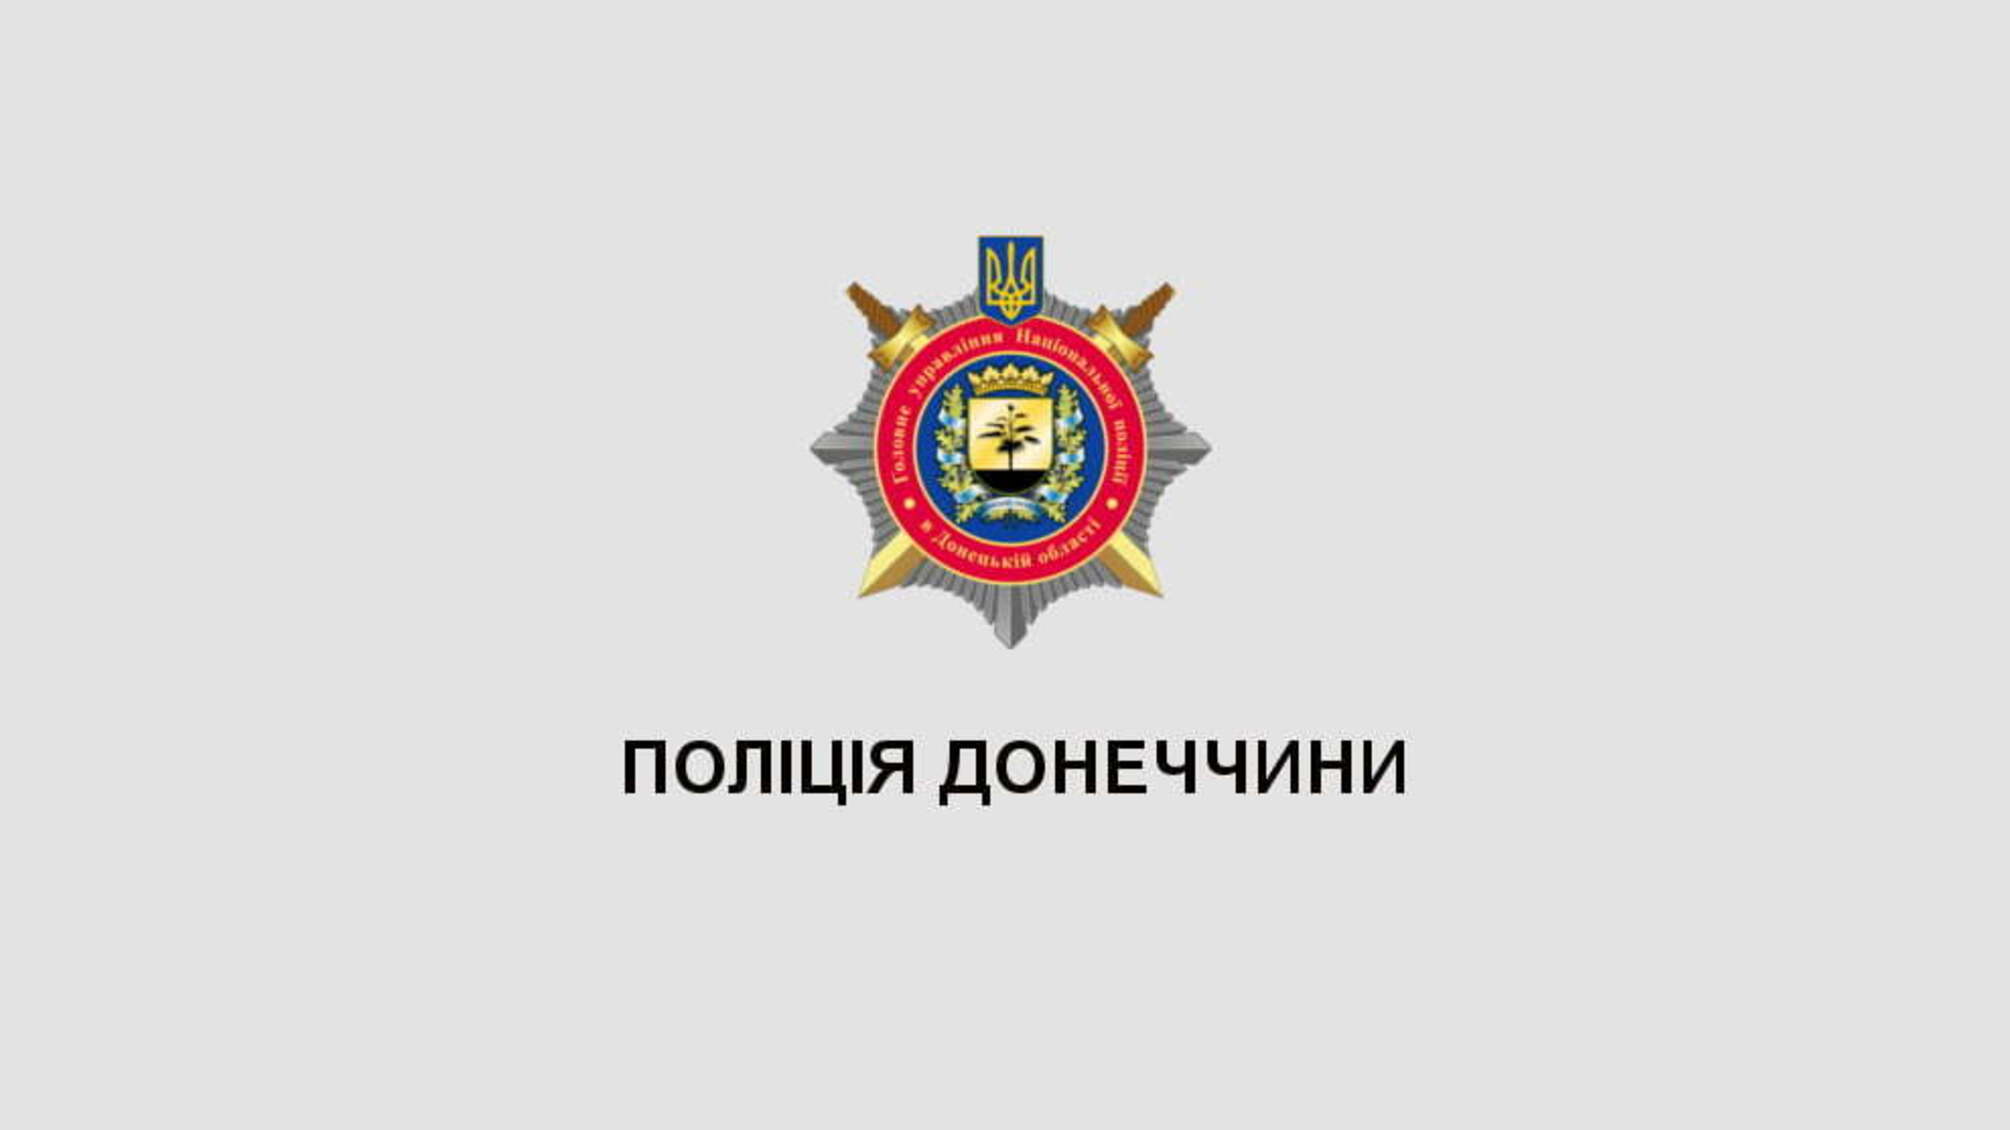 На Донеччині створено спортивний клуб поліції (ВІДЕО)